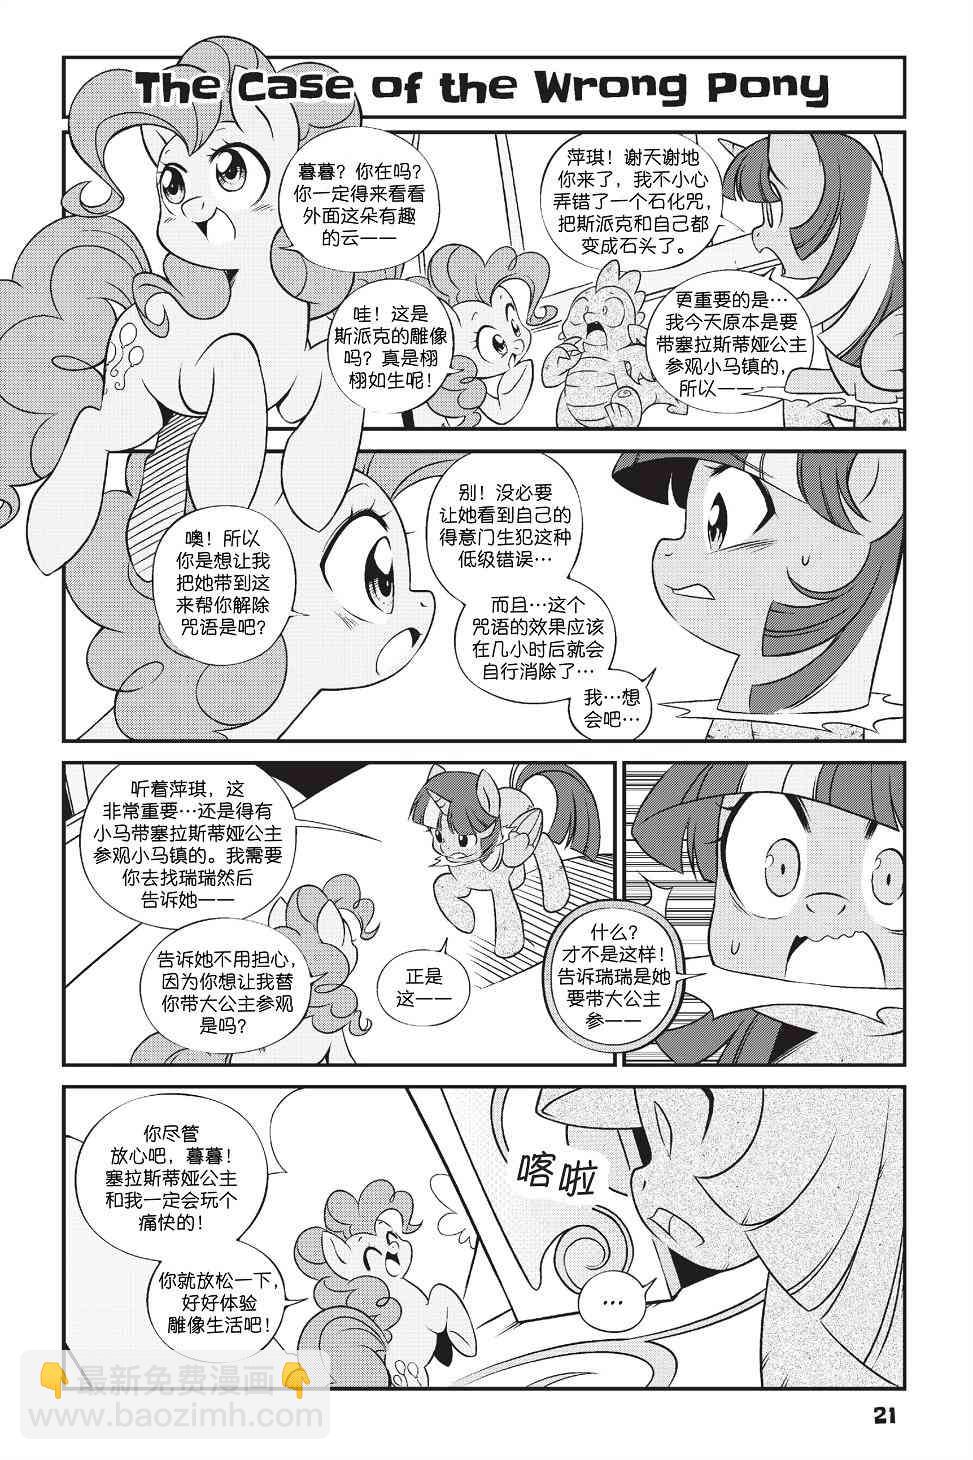 彩虹小馬G4：友情就是魔法 - 新日版漫畫第01部第02話 - 2